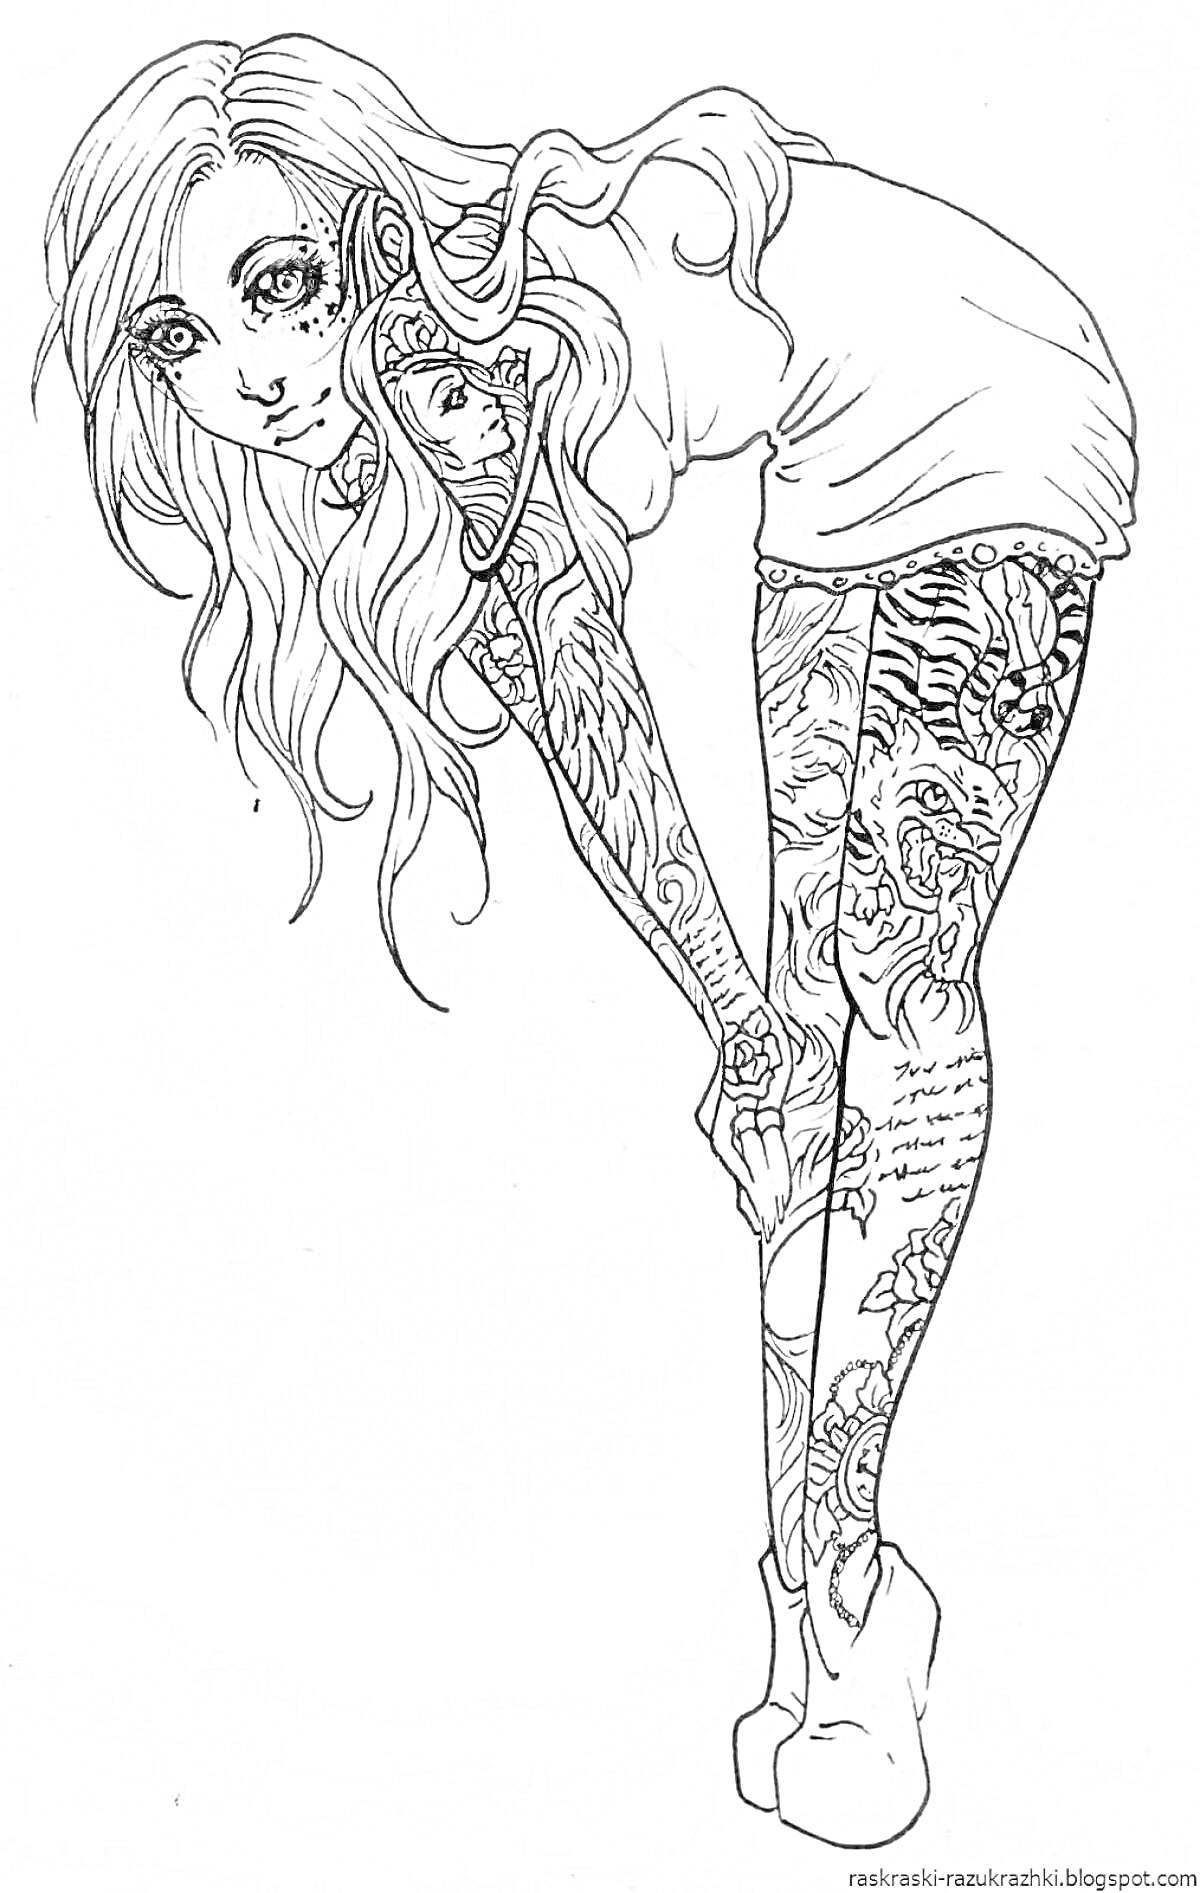 Раскраска Девушка с длинными волосами и татуировками на руках и ногах в коротком платье